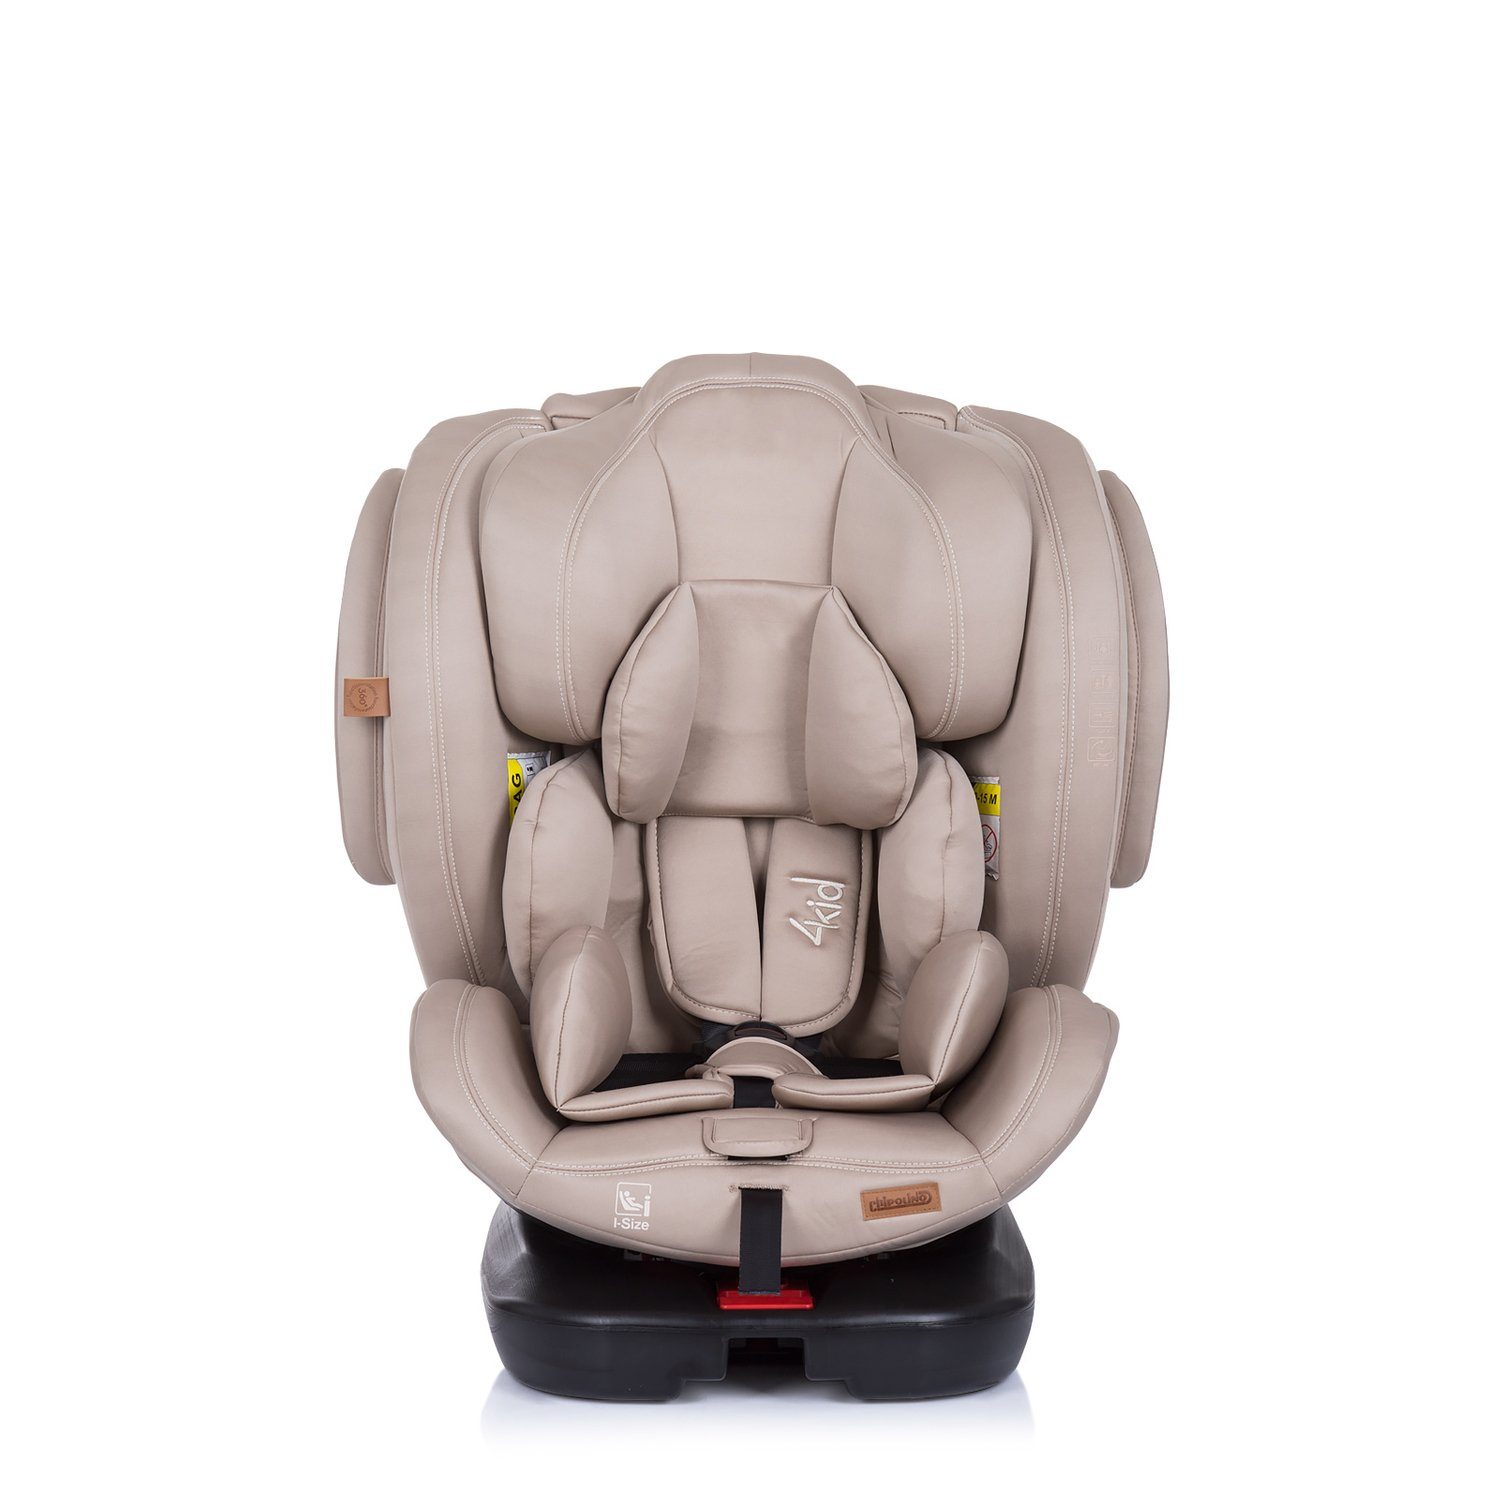 Chipolino Kopfstütze Isofix, verstellbar 150 cm) 4KID i-Size Kindersitz - 36 (40 Isofix, beige Autokindersitz kg, bis: